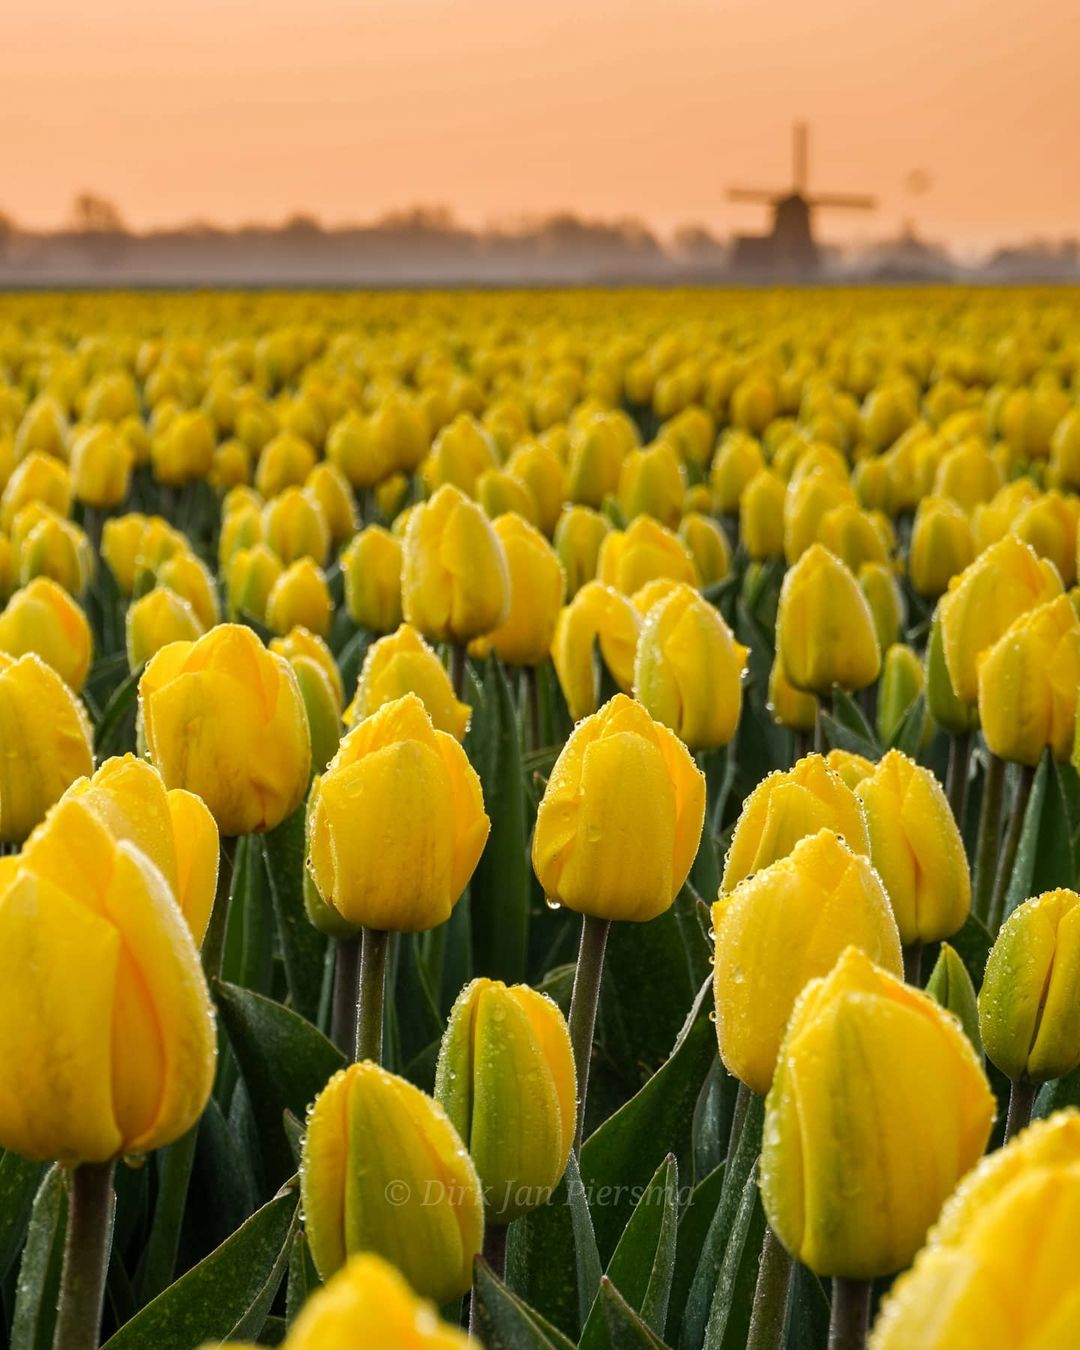 Волшебные поля цветущих тюльпанов от Дирка Яна Пирсма